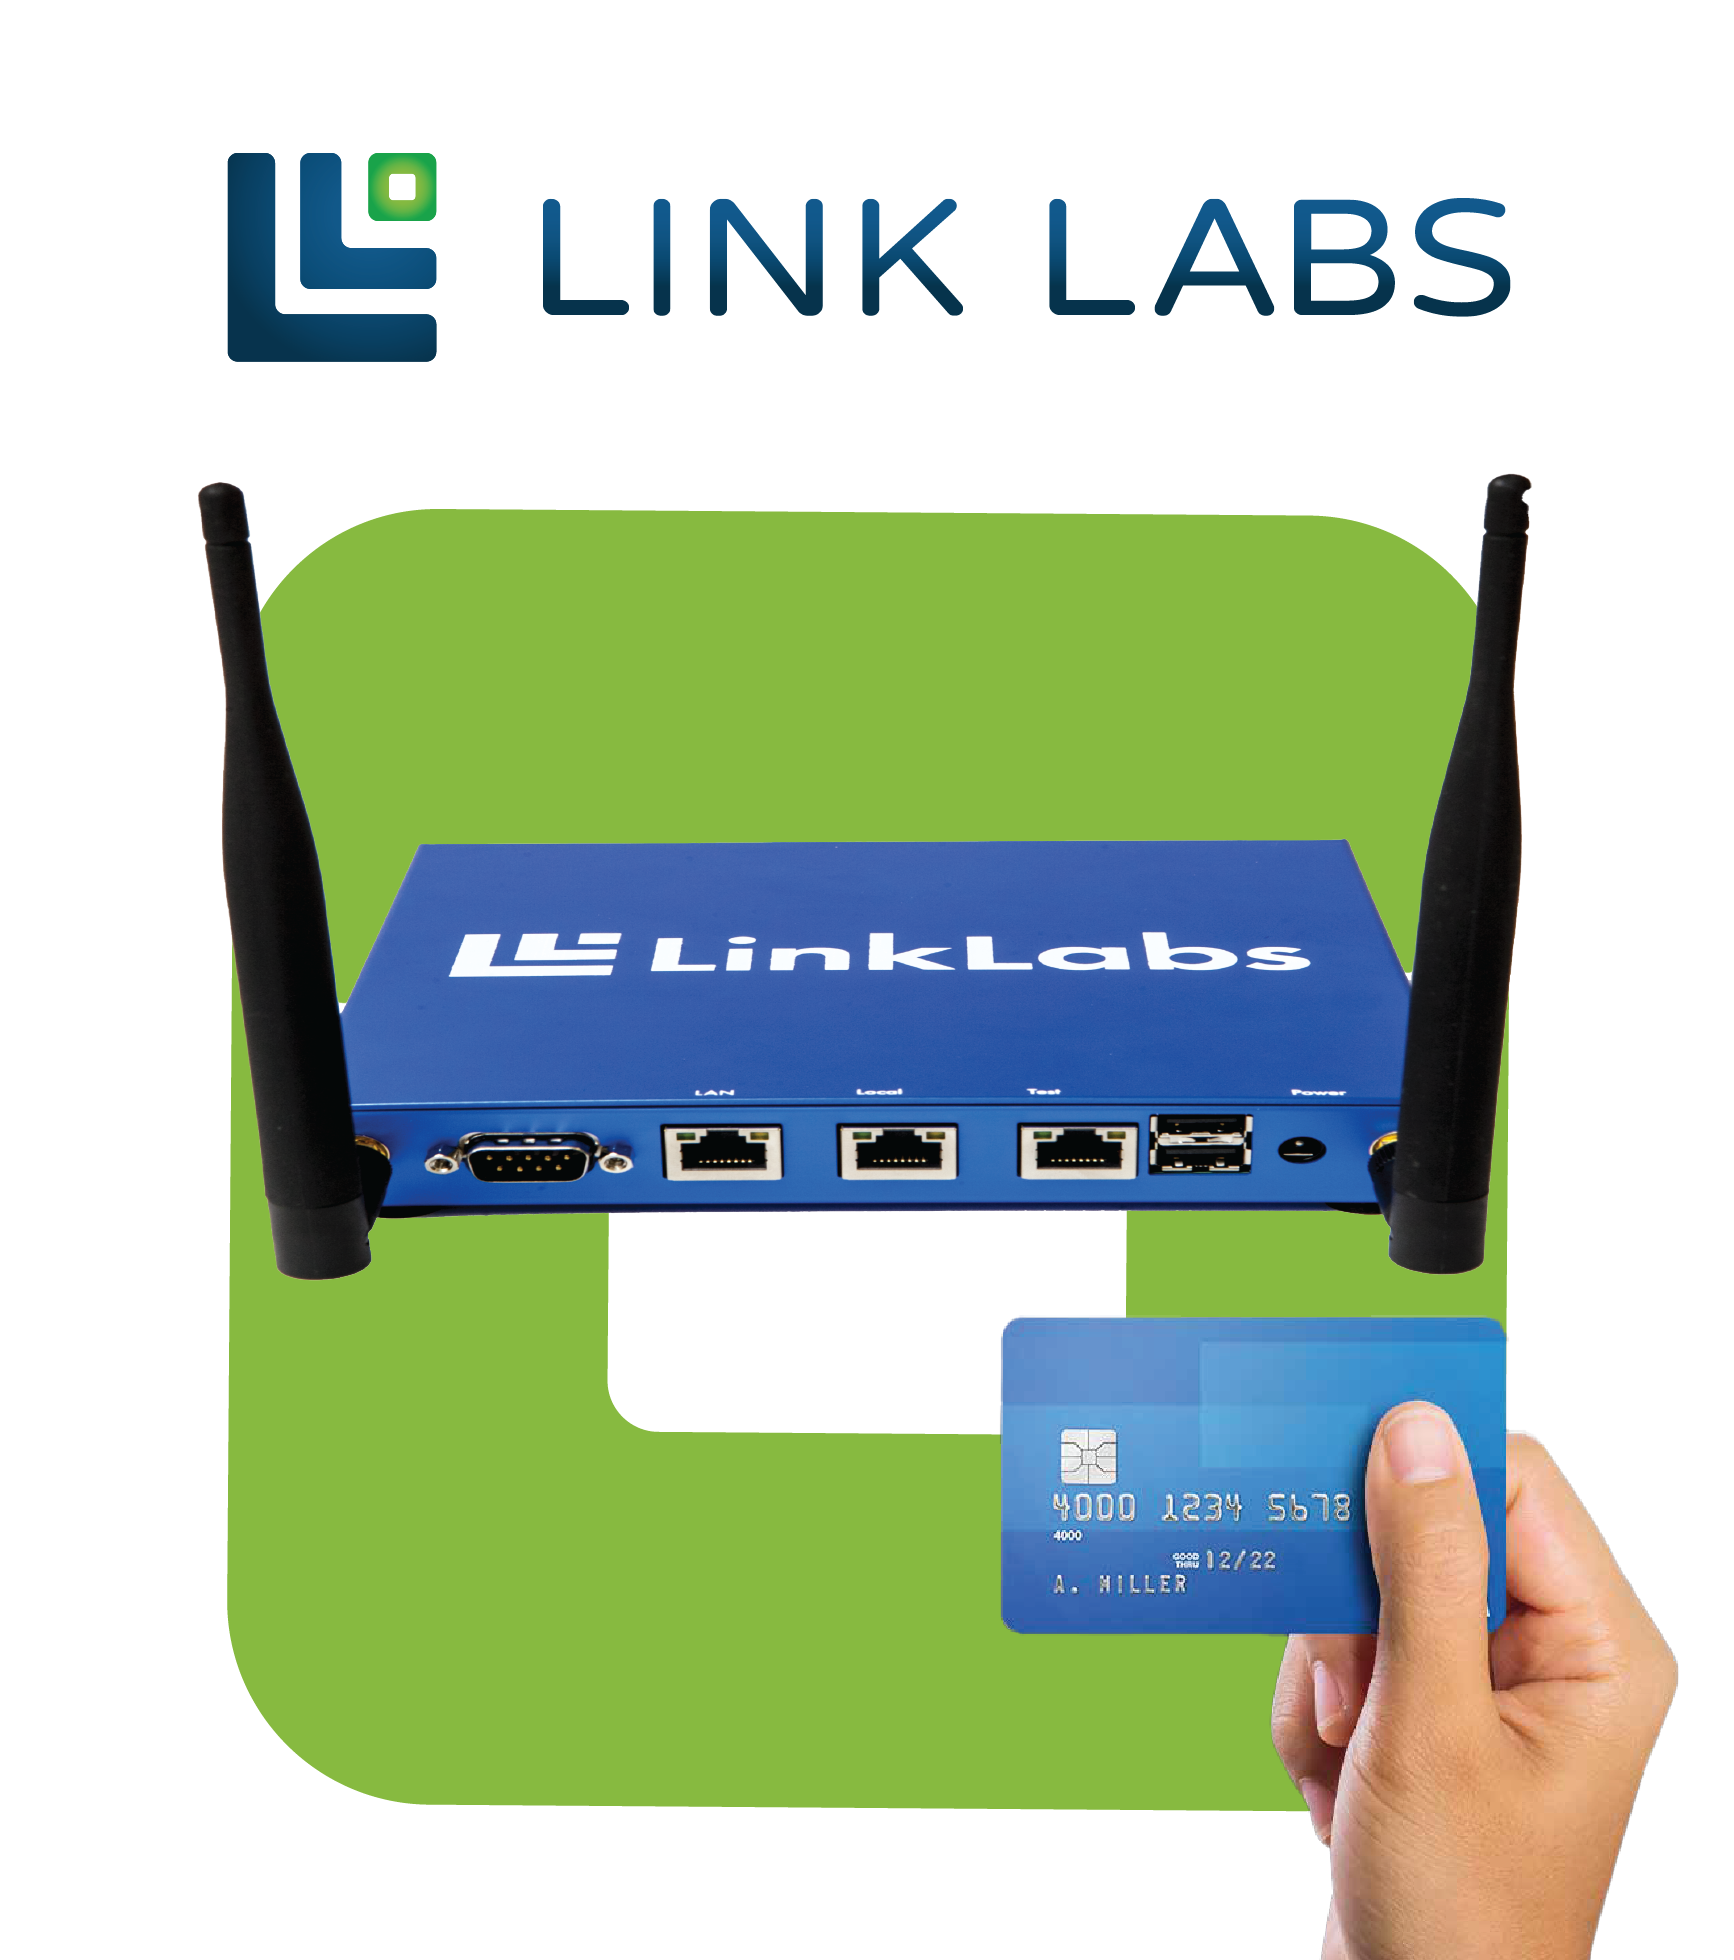 Link Labs AirFinder OnSite